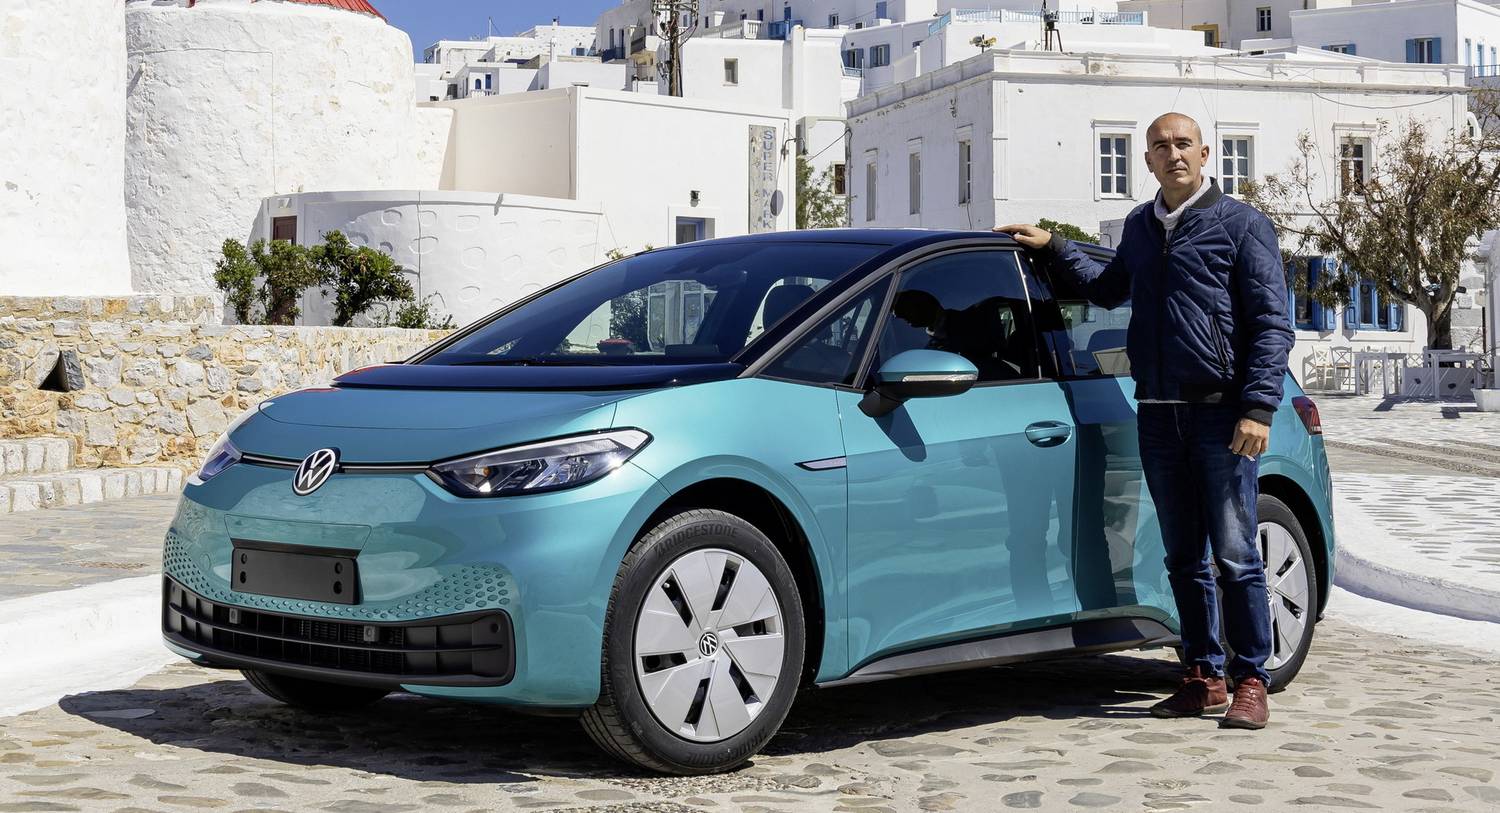 Totalcar – Περιοδικό – Η πρώτη ιδιωτική VW έφτασε στο ελληνικό νησί του ηλεκτρικού αυτοκινήτου